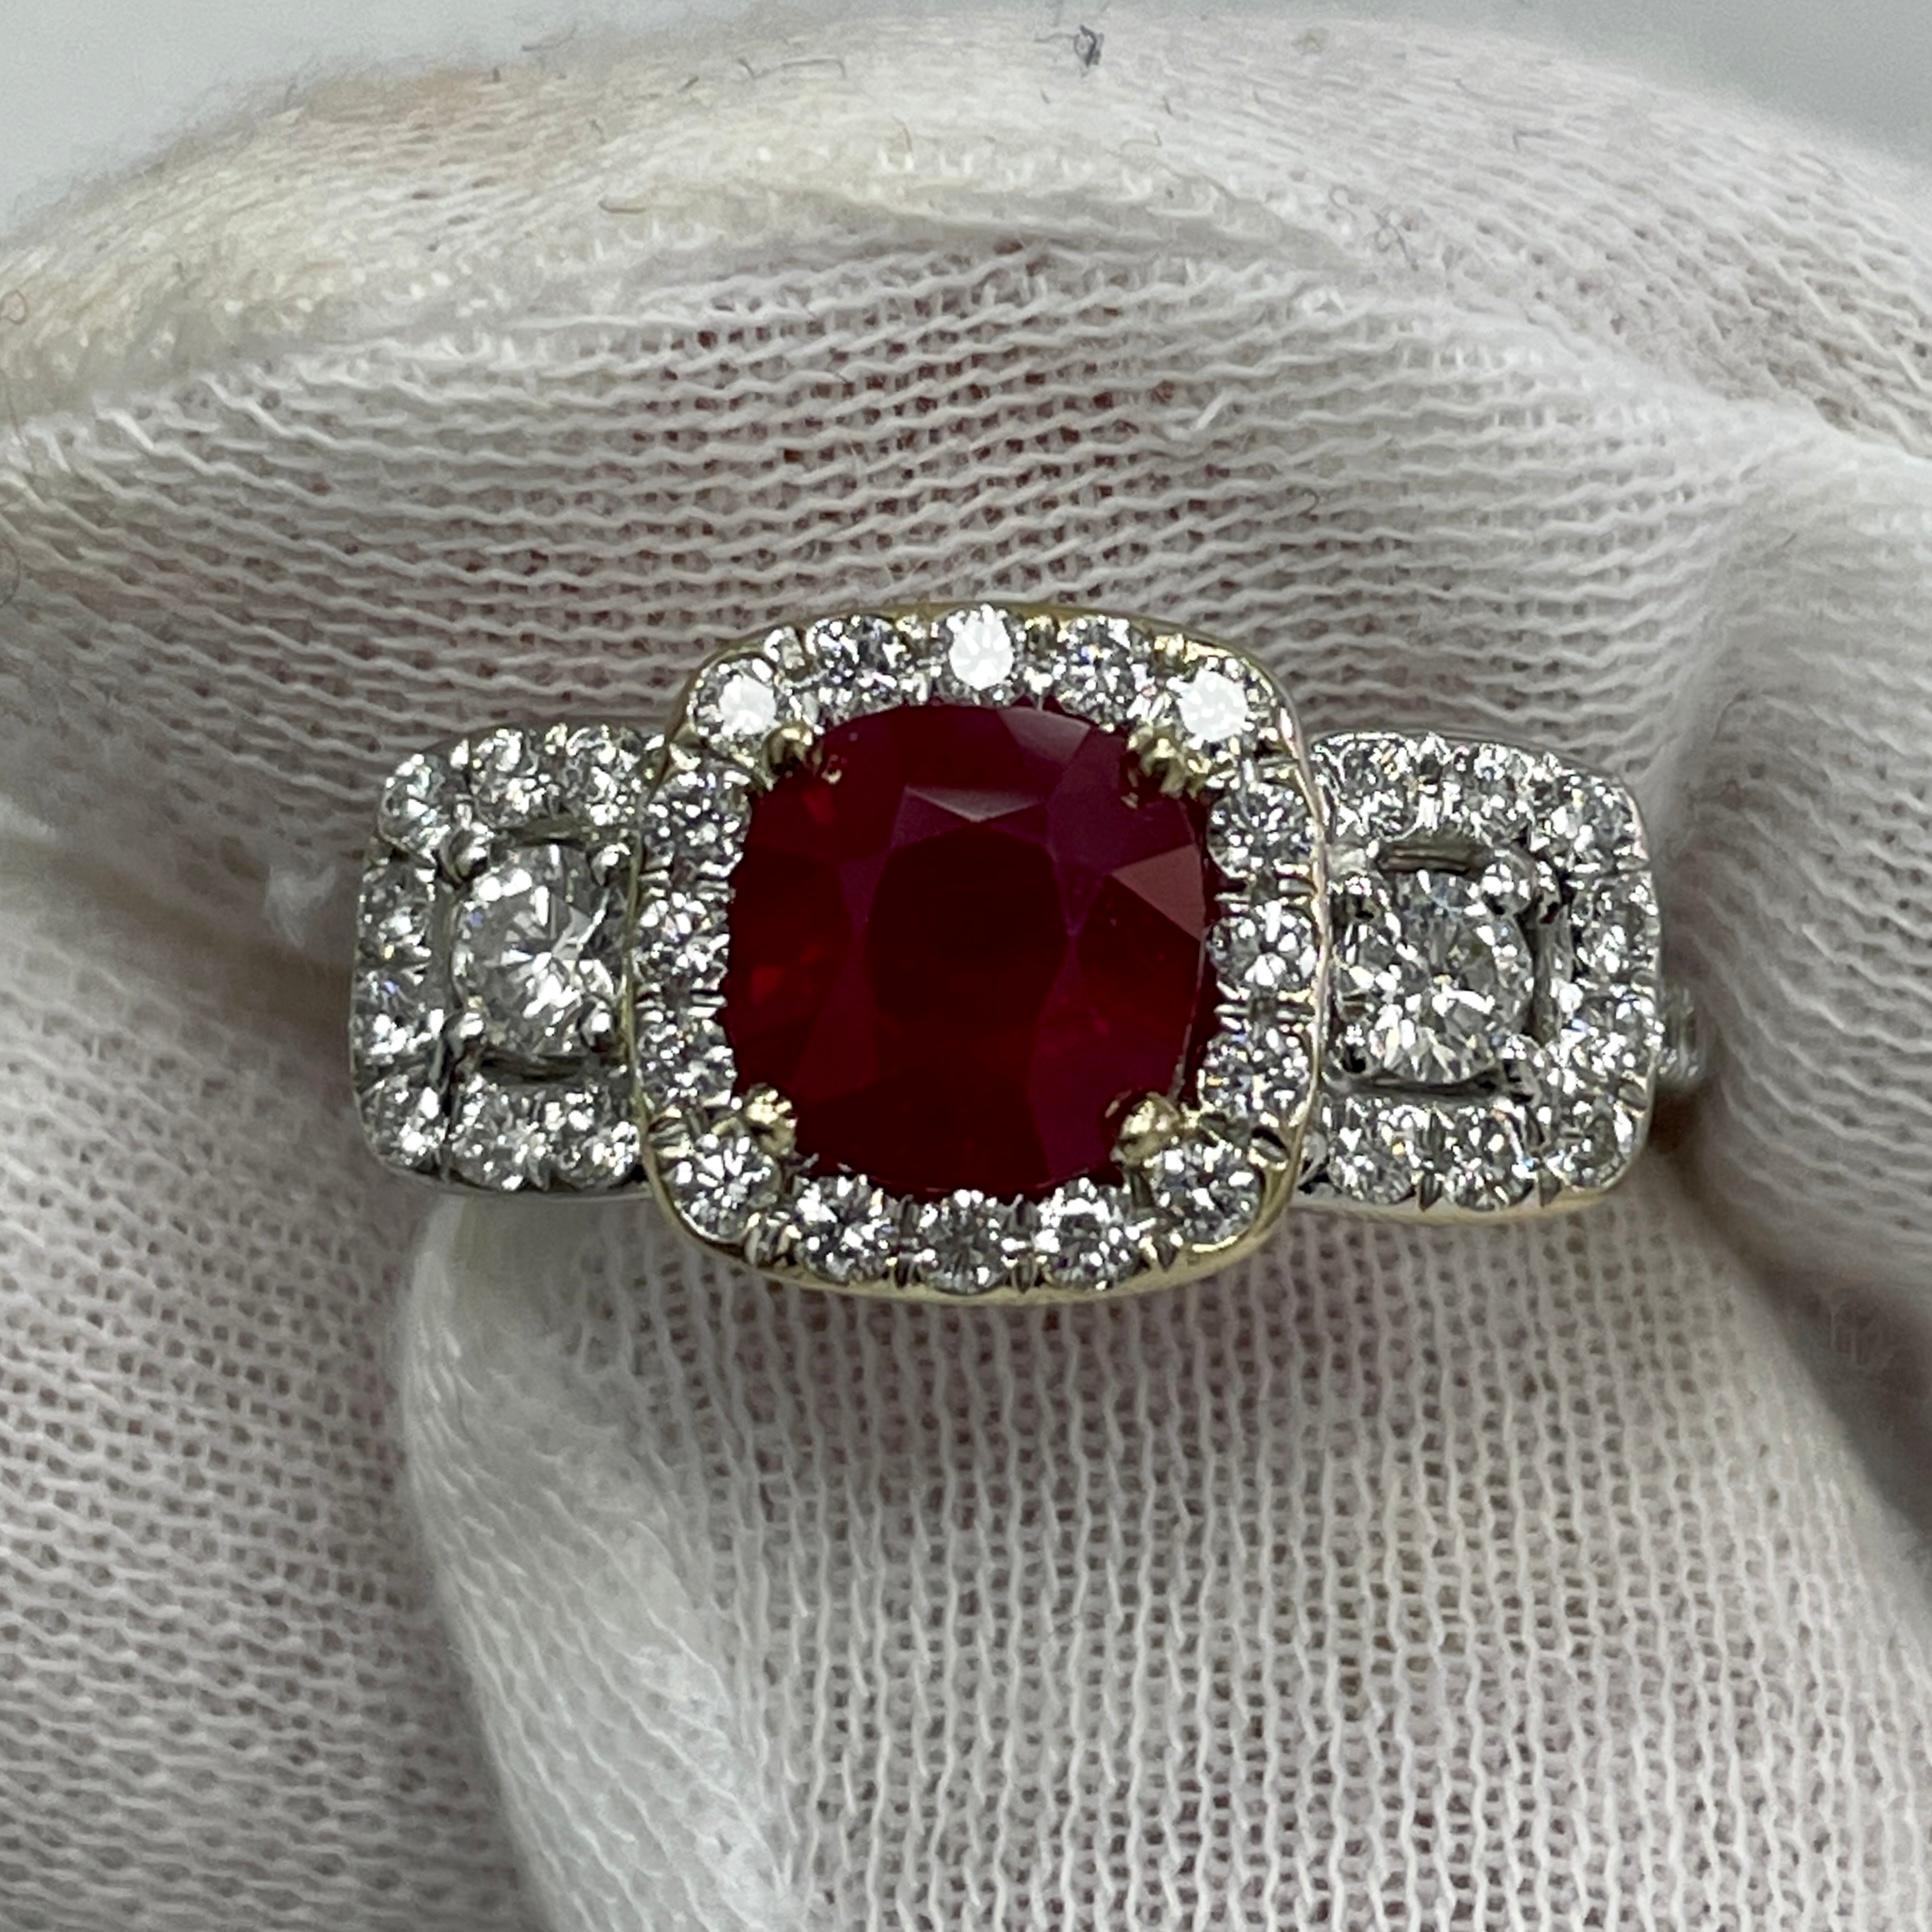 Ce rubis rouge saturé, signe d'arrêt, est monté sur une bague en or blanc 18 carats avec 0,87 carats de diamants blancs brillants.